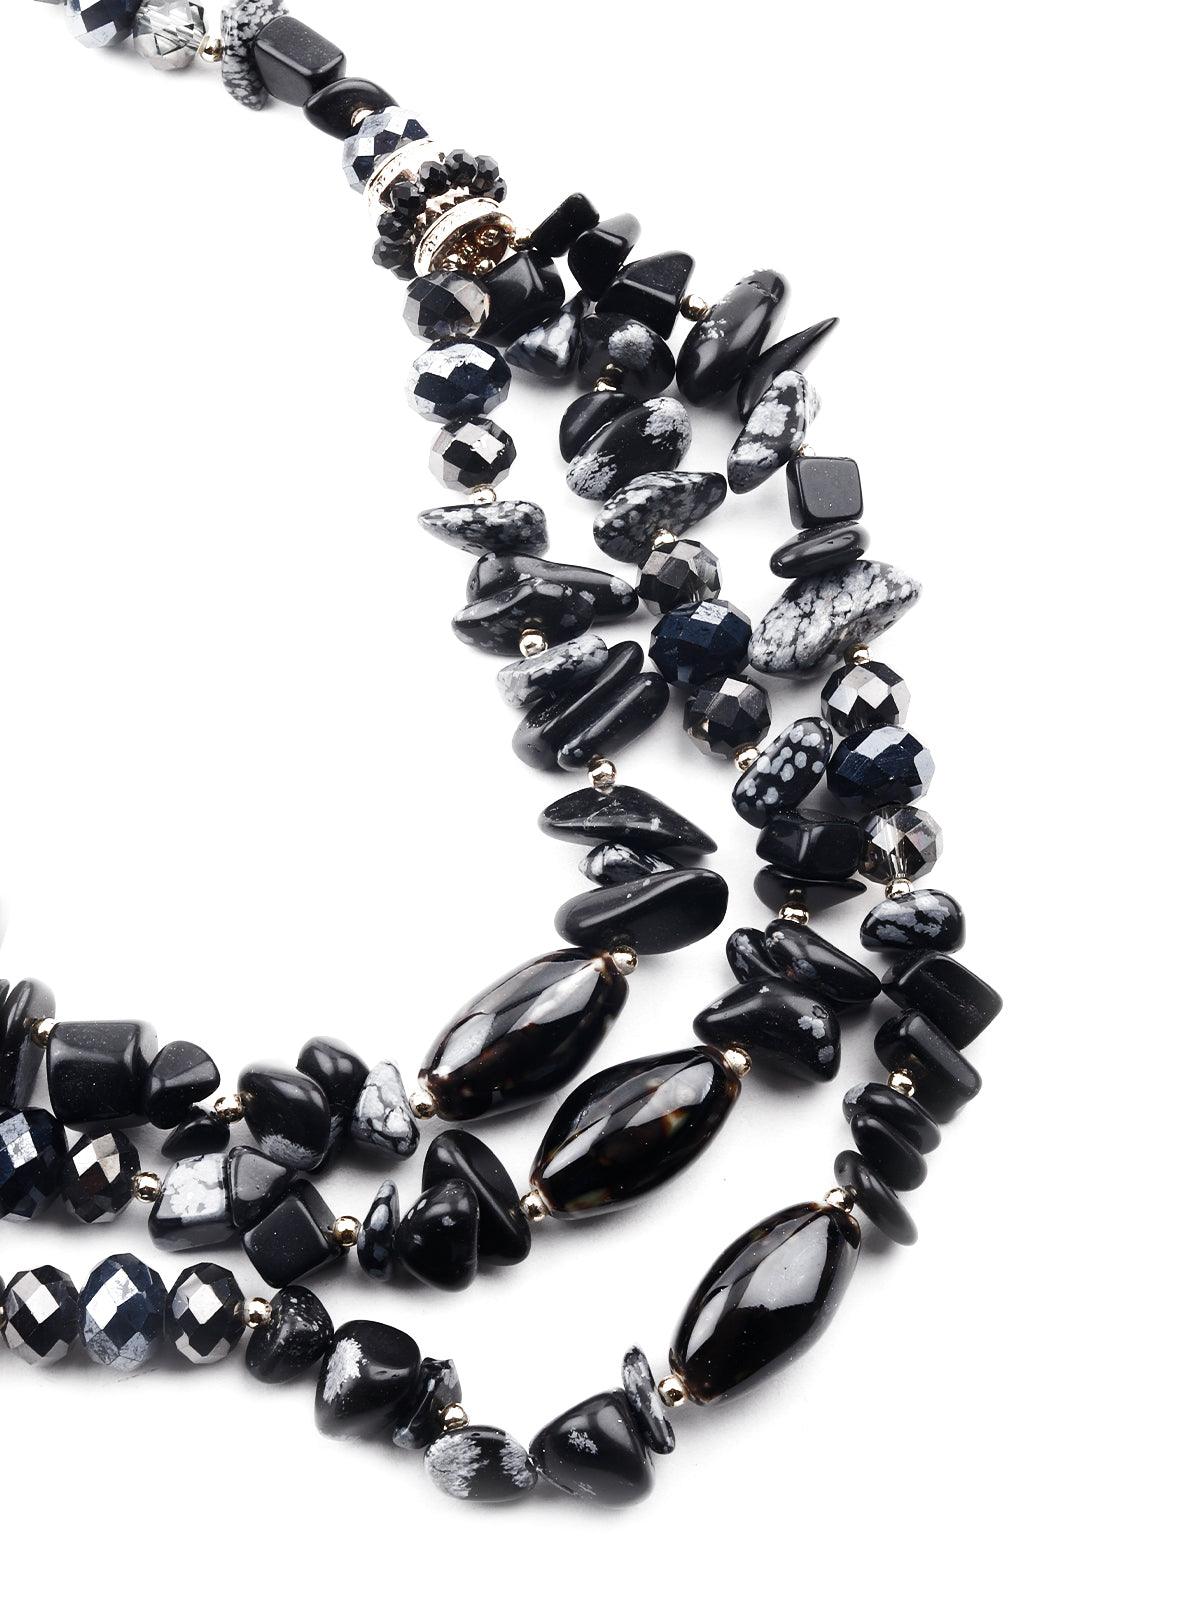 Women's Jet Black Beacy Layered Necklace - Odette